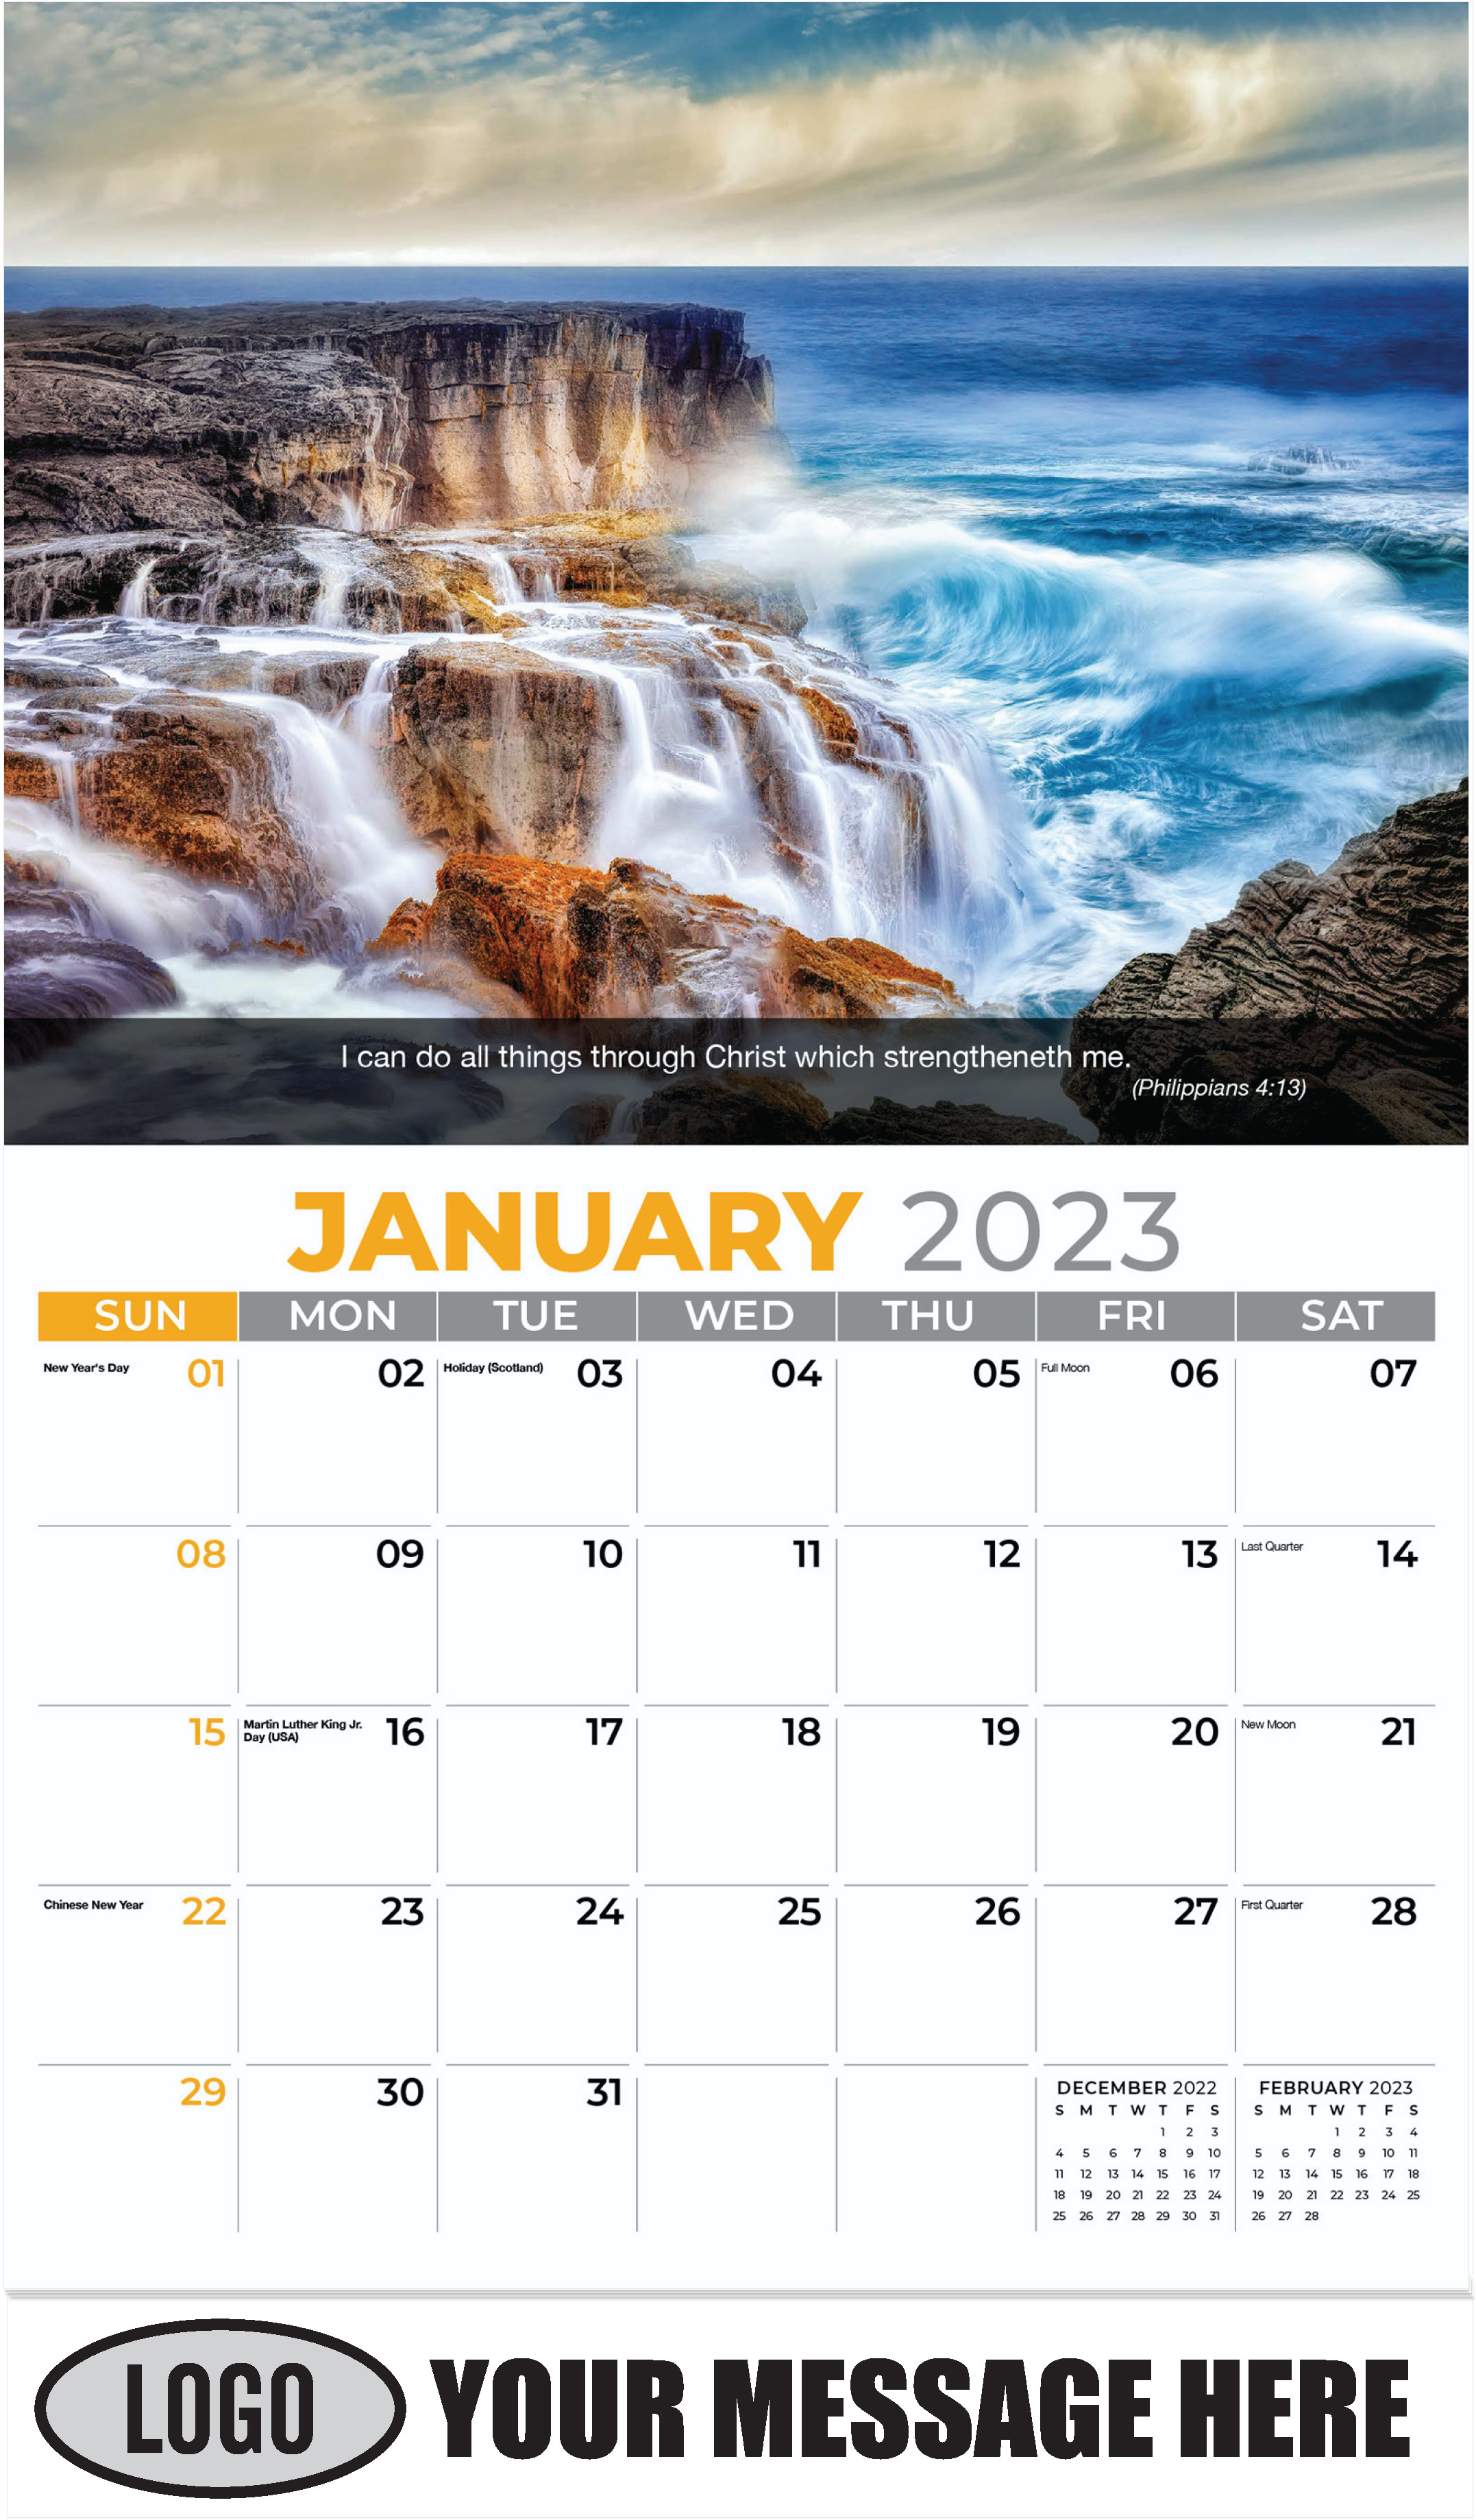 The Big Island, Puna district, Hawaii - January - Faith Passages 2023 Promotional Calendar